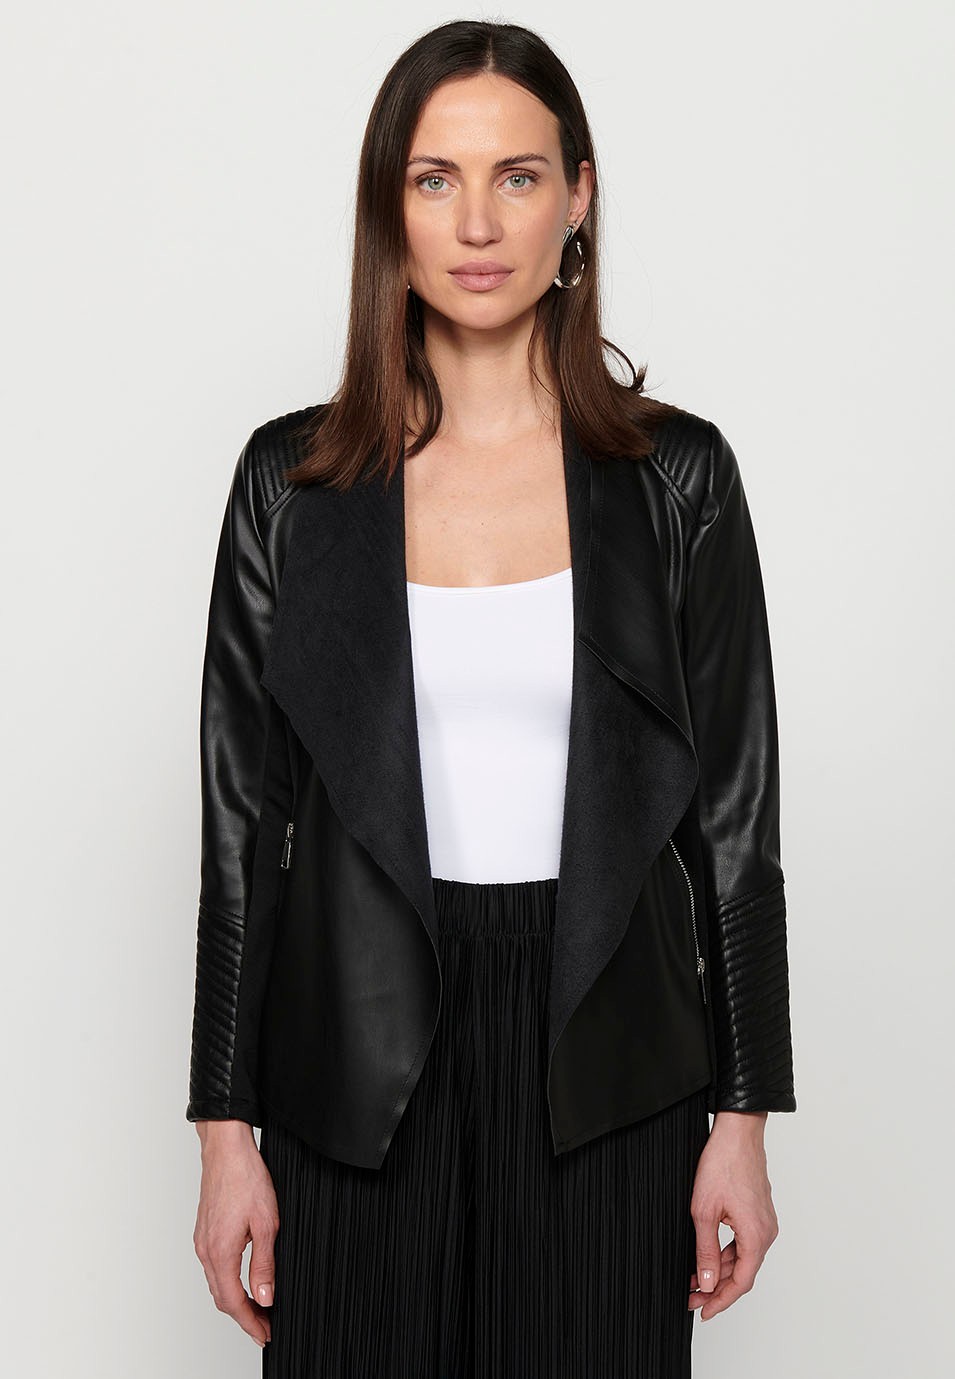 Jaqueta de màniga llarga, acabat asimètric, Color negre per a dona